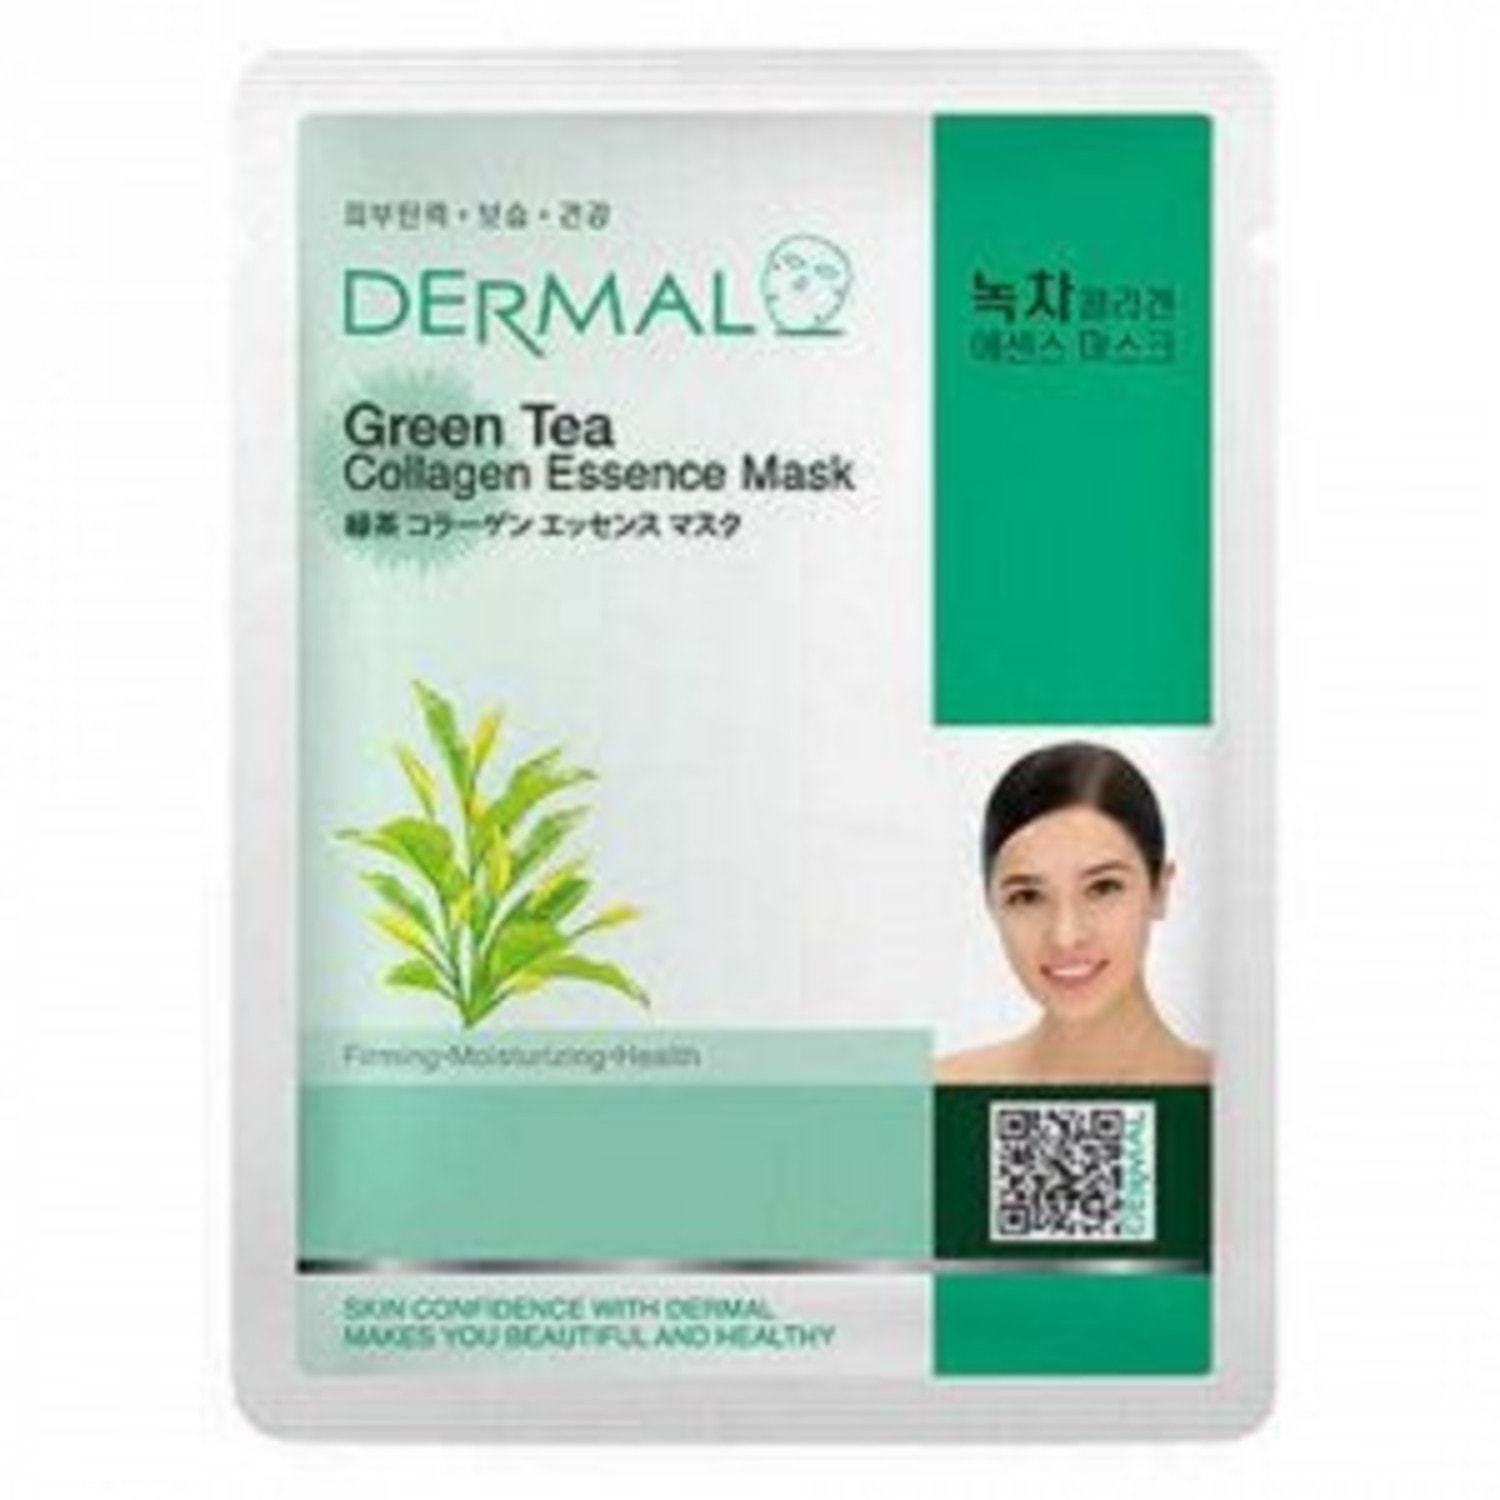 DERMAL Косметическая маска коллагеновая с зеленым чаем, 25г. / 850330